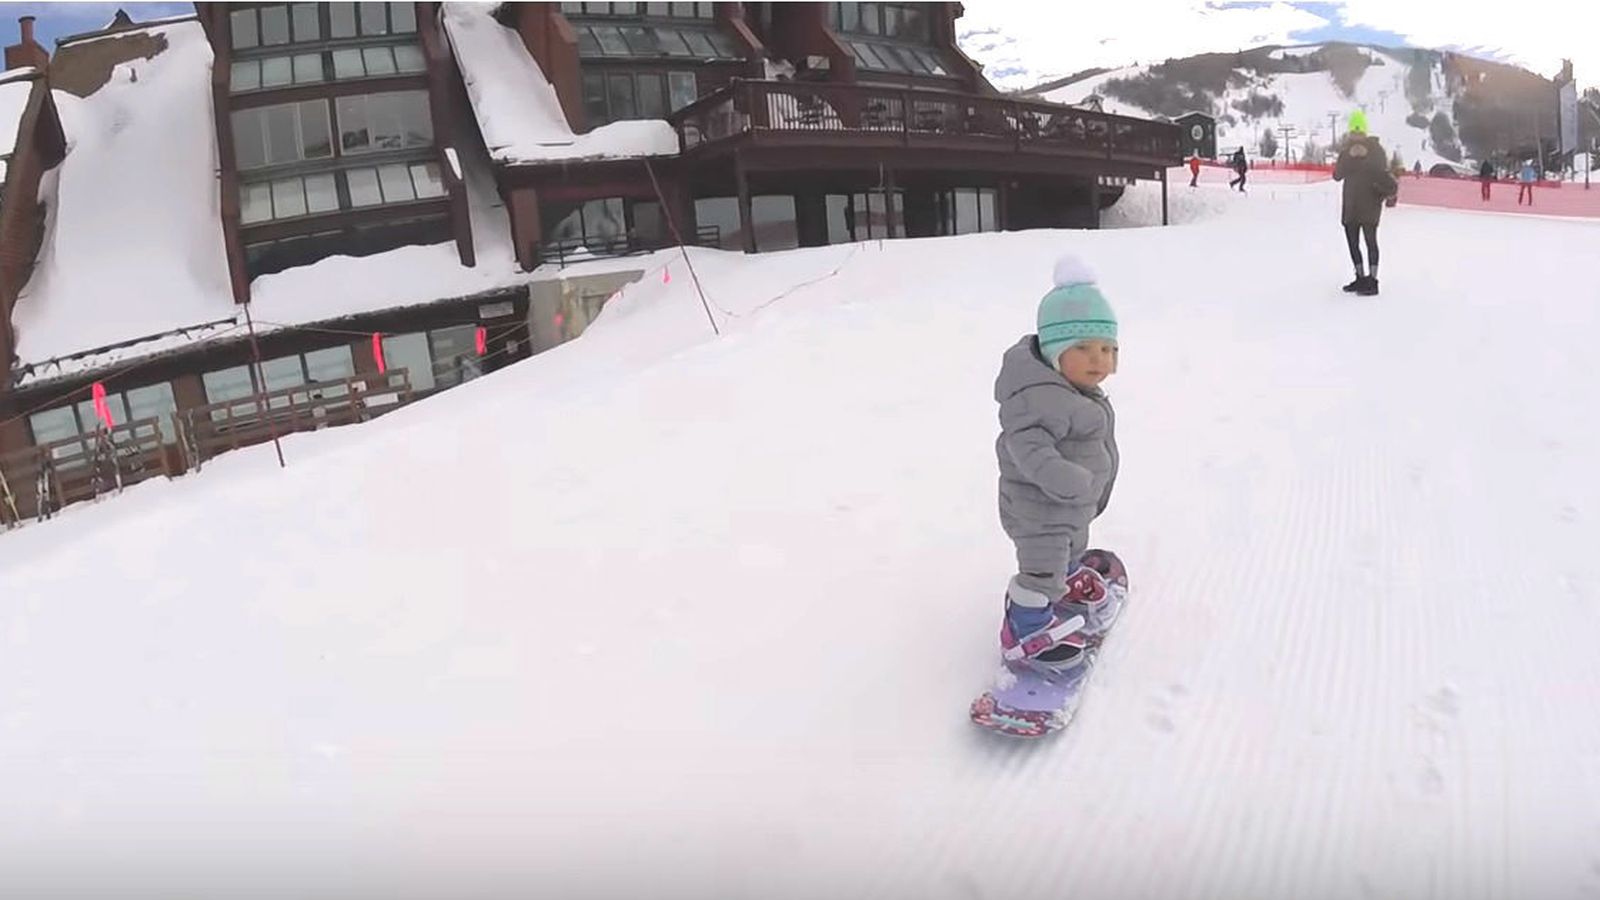 Foto: Sloan Henderson, practicando 'snowboard' (Storyfull/YouTube/Sloan Henderson)